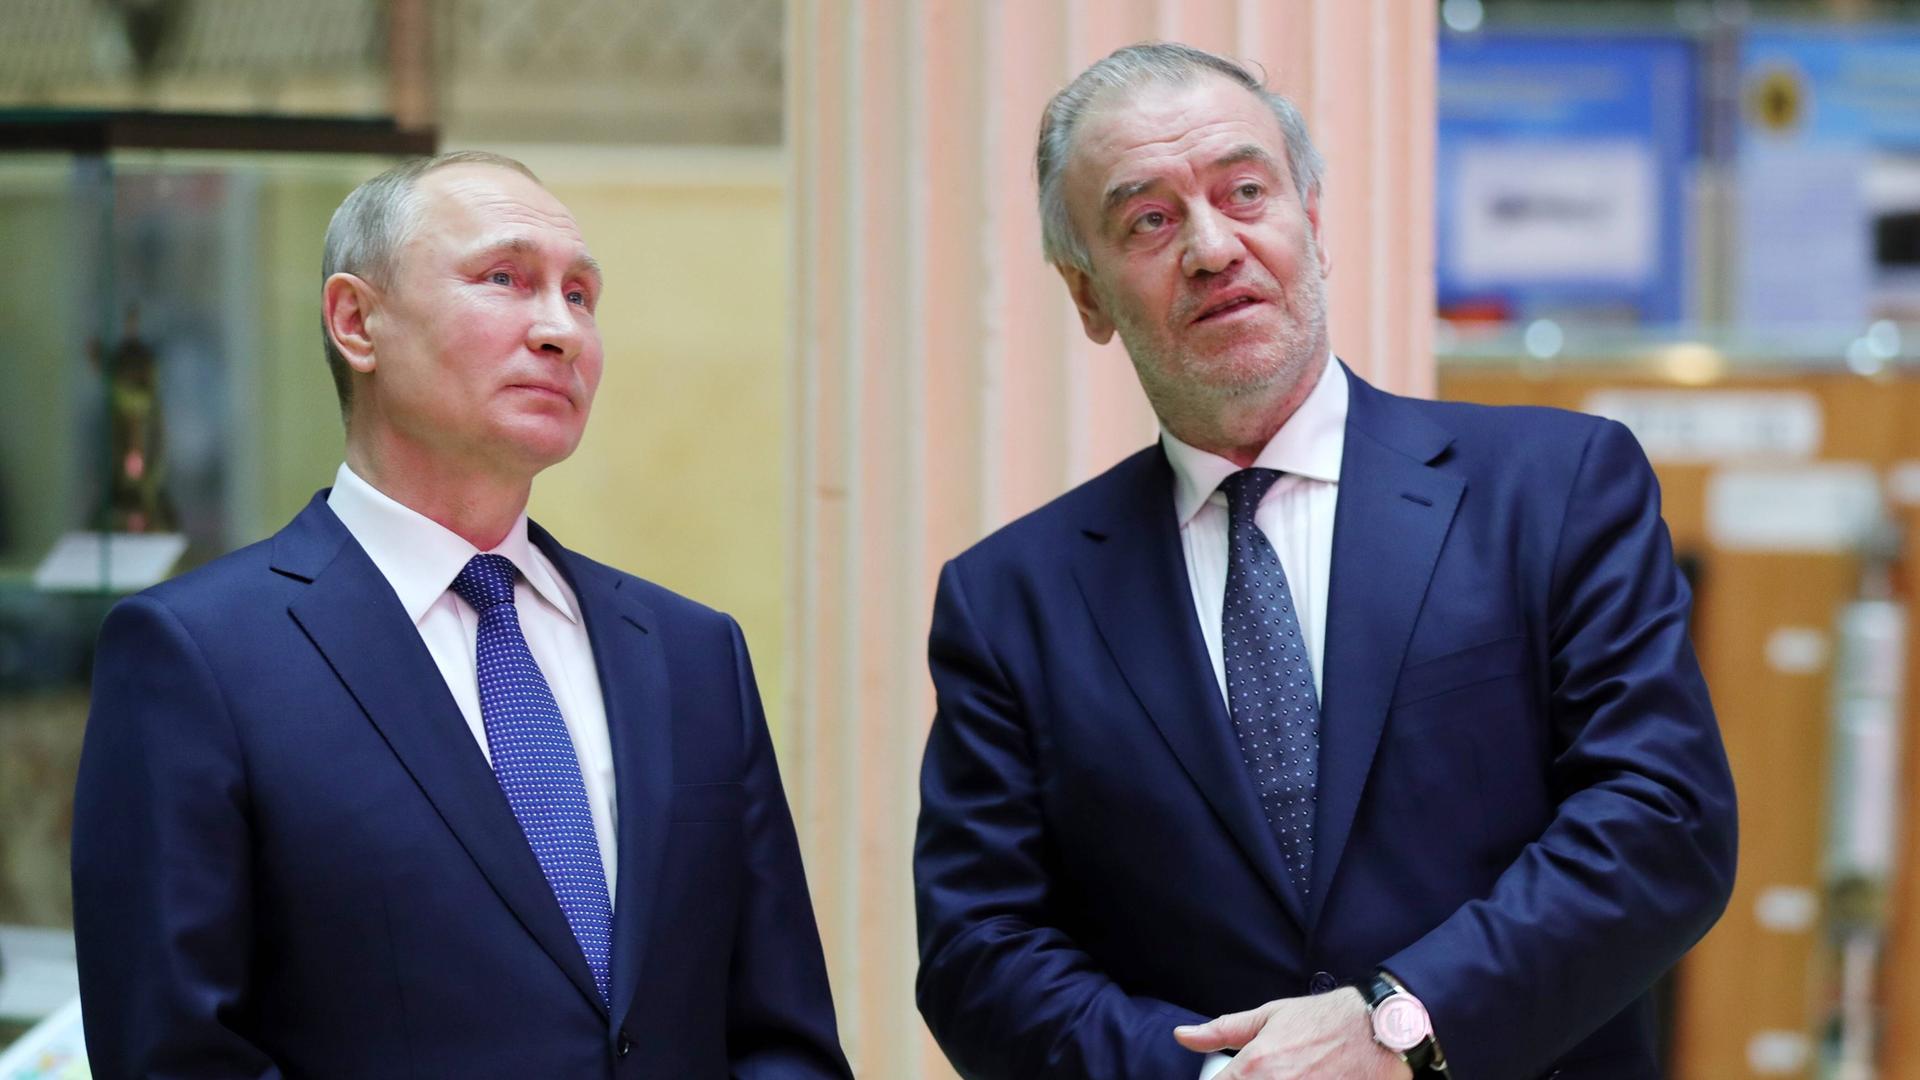 Der russische Präsident Wladimir Putin und der Dirigent Waleri Gergijew stehen nebeneinander. Putin auf der linken Seite, Gergijew auf der rechten. Sie tragen beide dunkelblaue Anzüge.